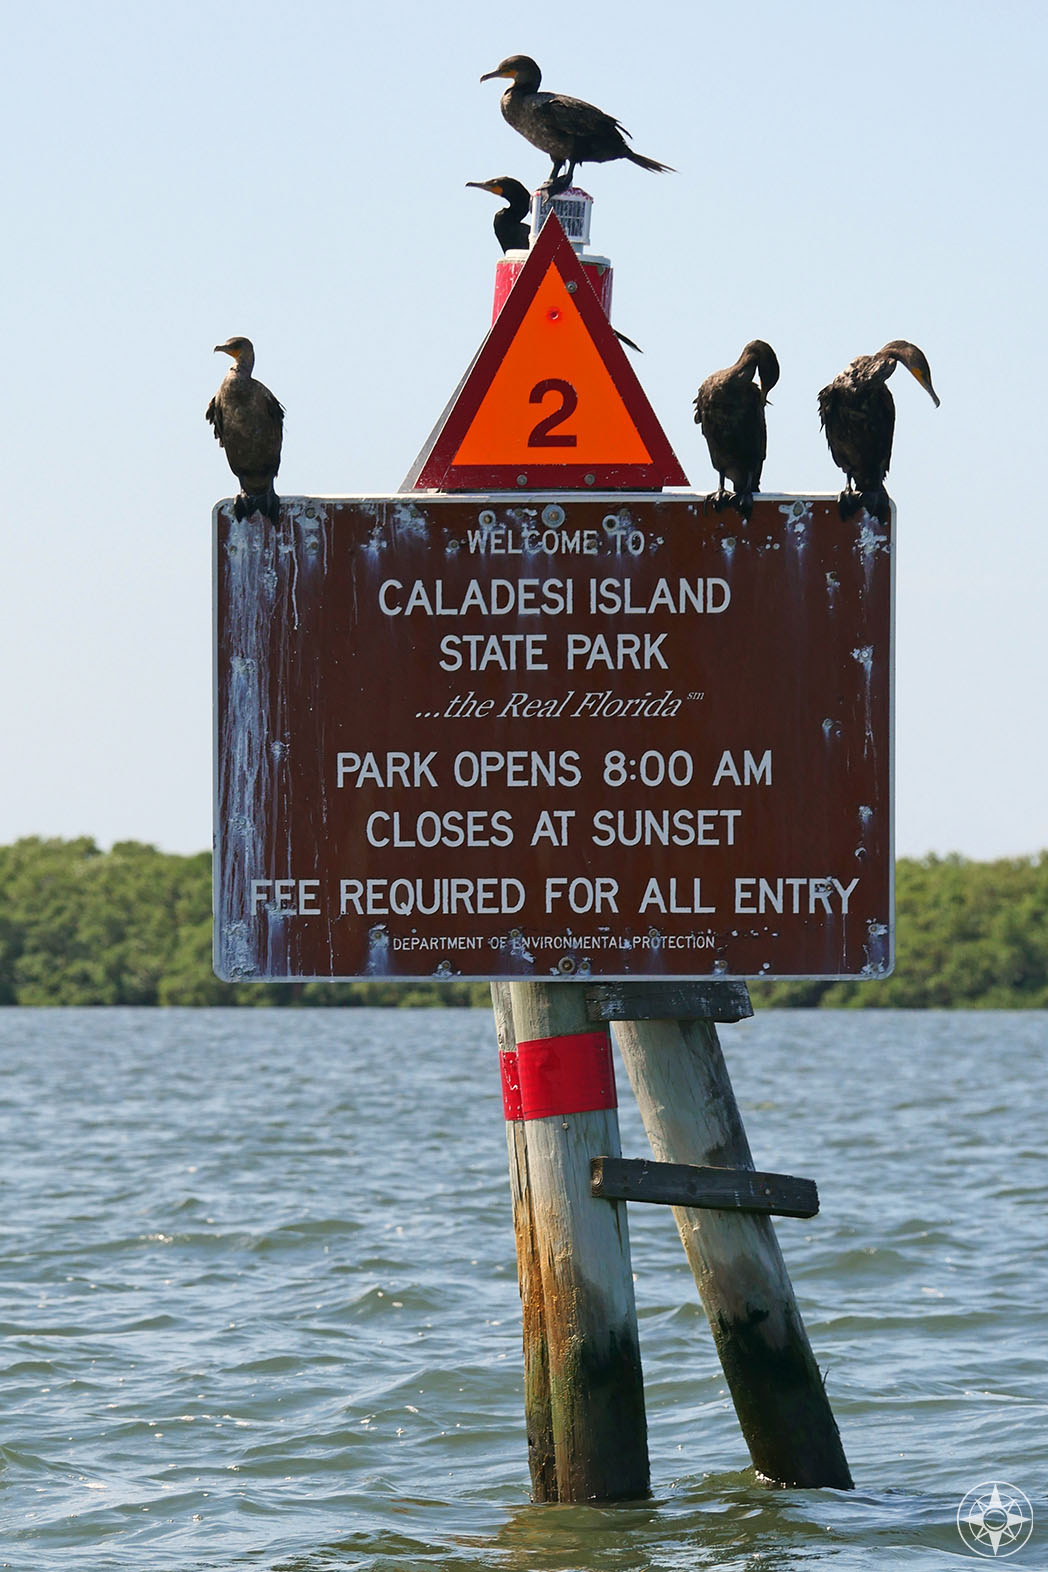  Cormorans sur panneau à l'entrée de la voie navigable du parc d'État de l'île de Caladesi, la vraie Floride 